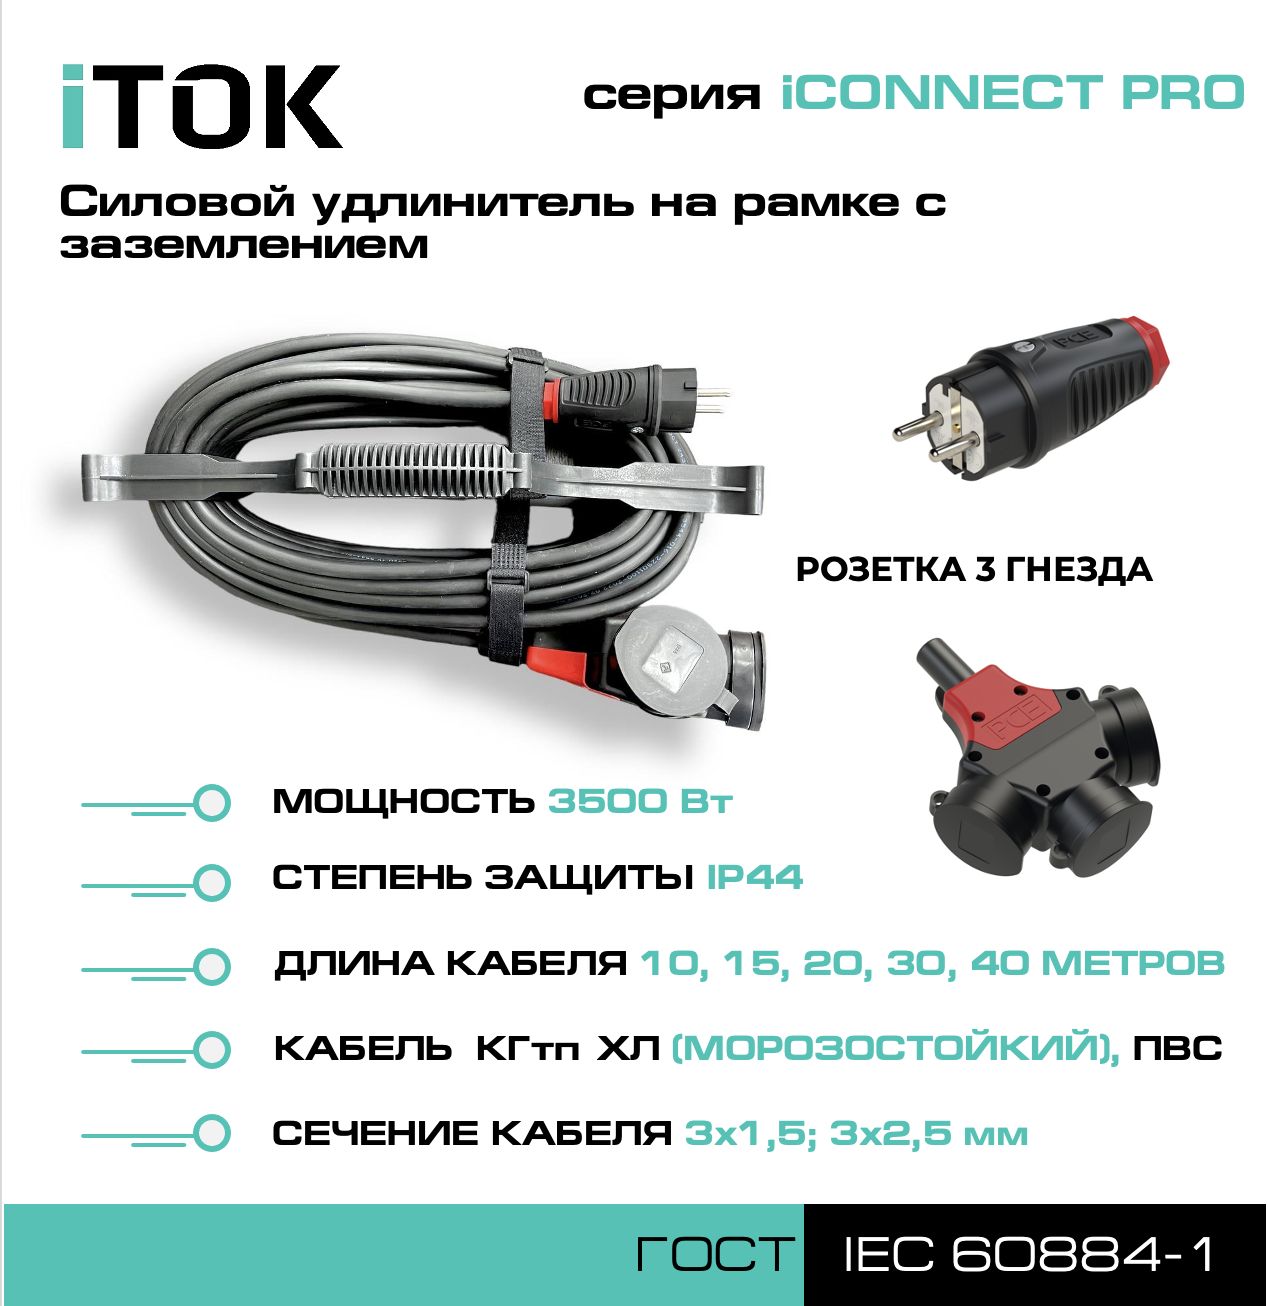 Удлинитель на рамке iTOK iCONNECT PRO с заземлением ПВС 3х1,5 мм 3 гнезда IP44 15 м